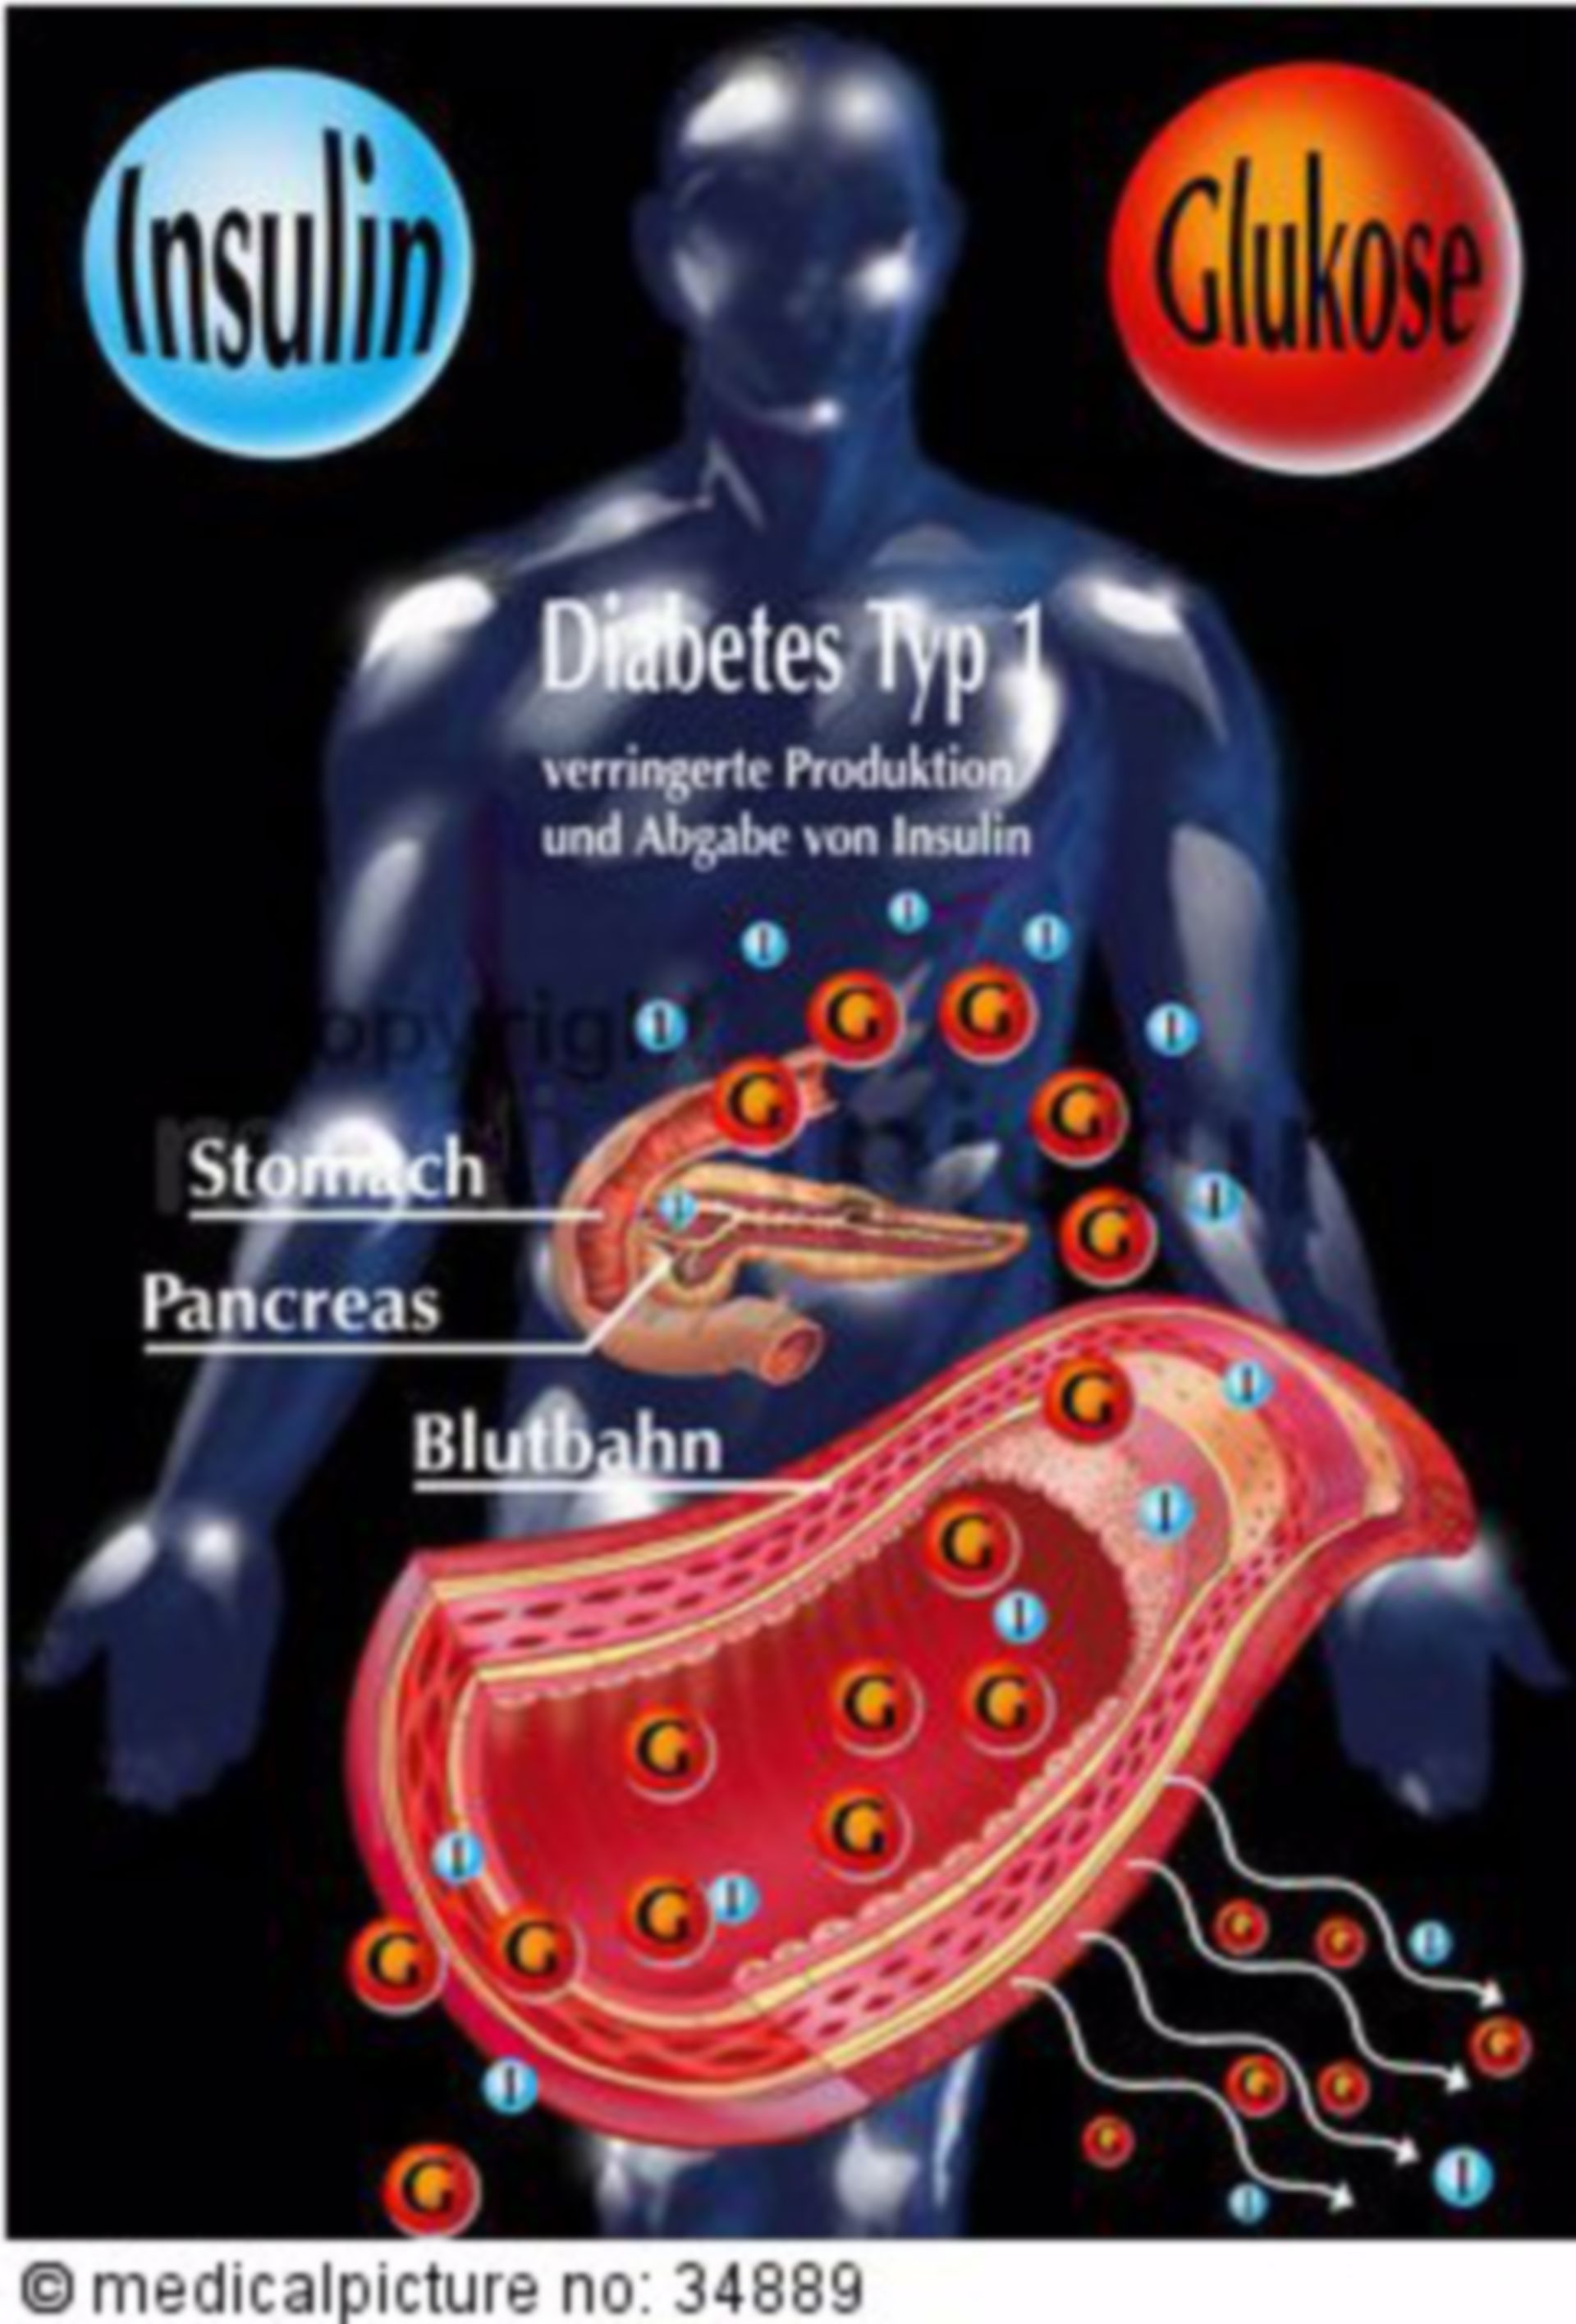 Insulinsekretion bei Menschen mit Typ-1-Diabetes